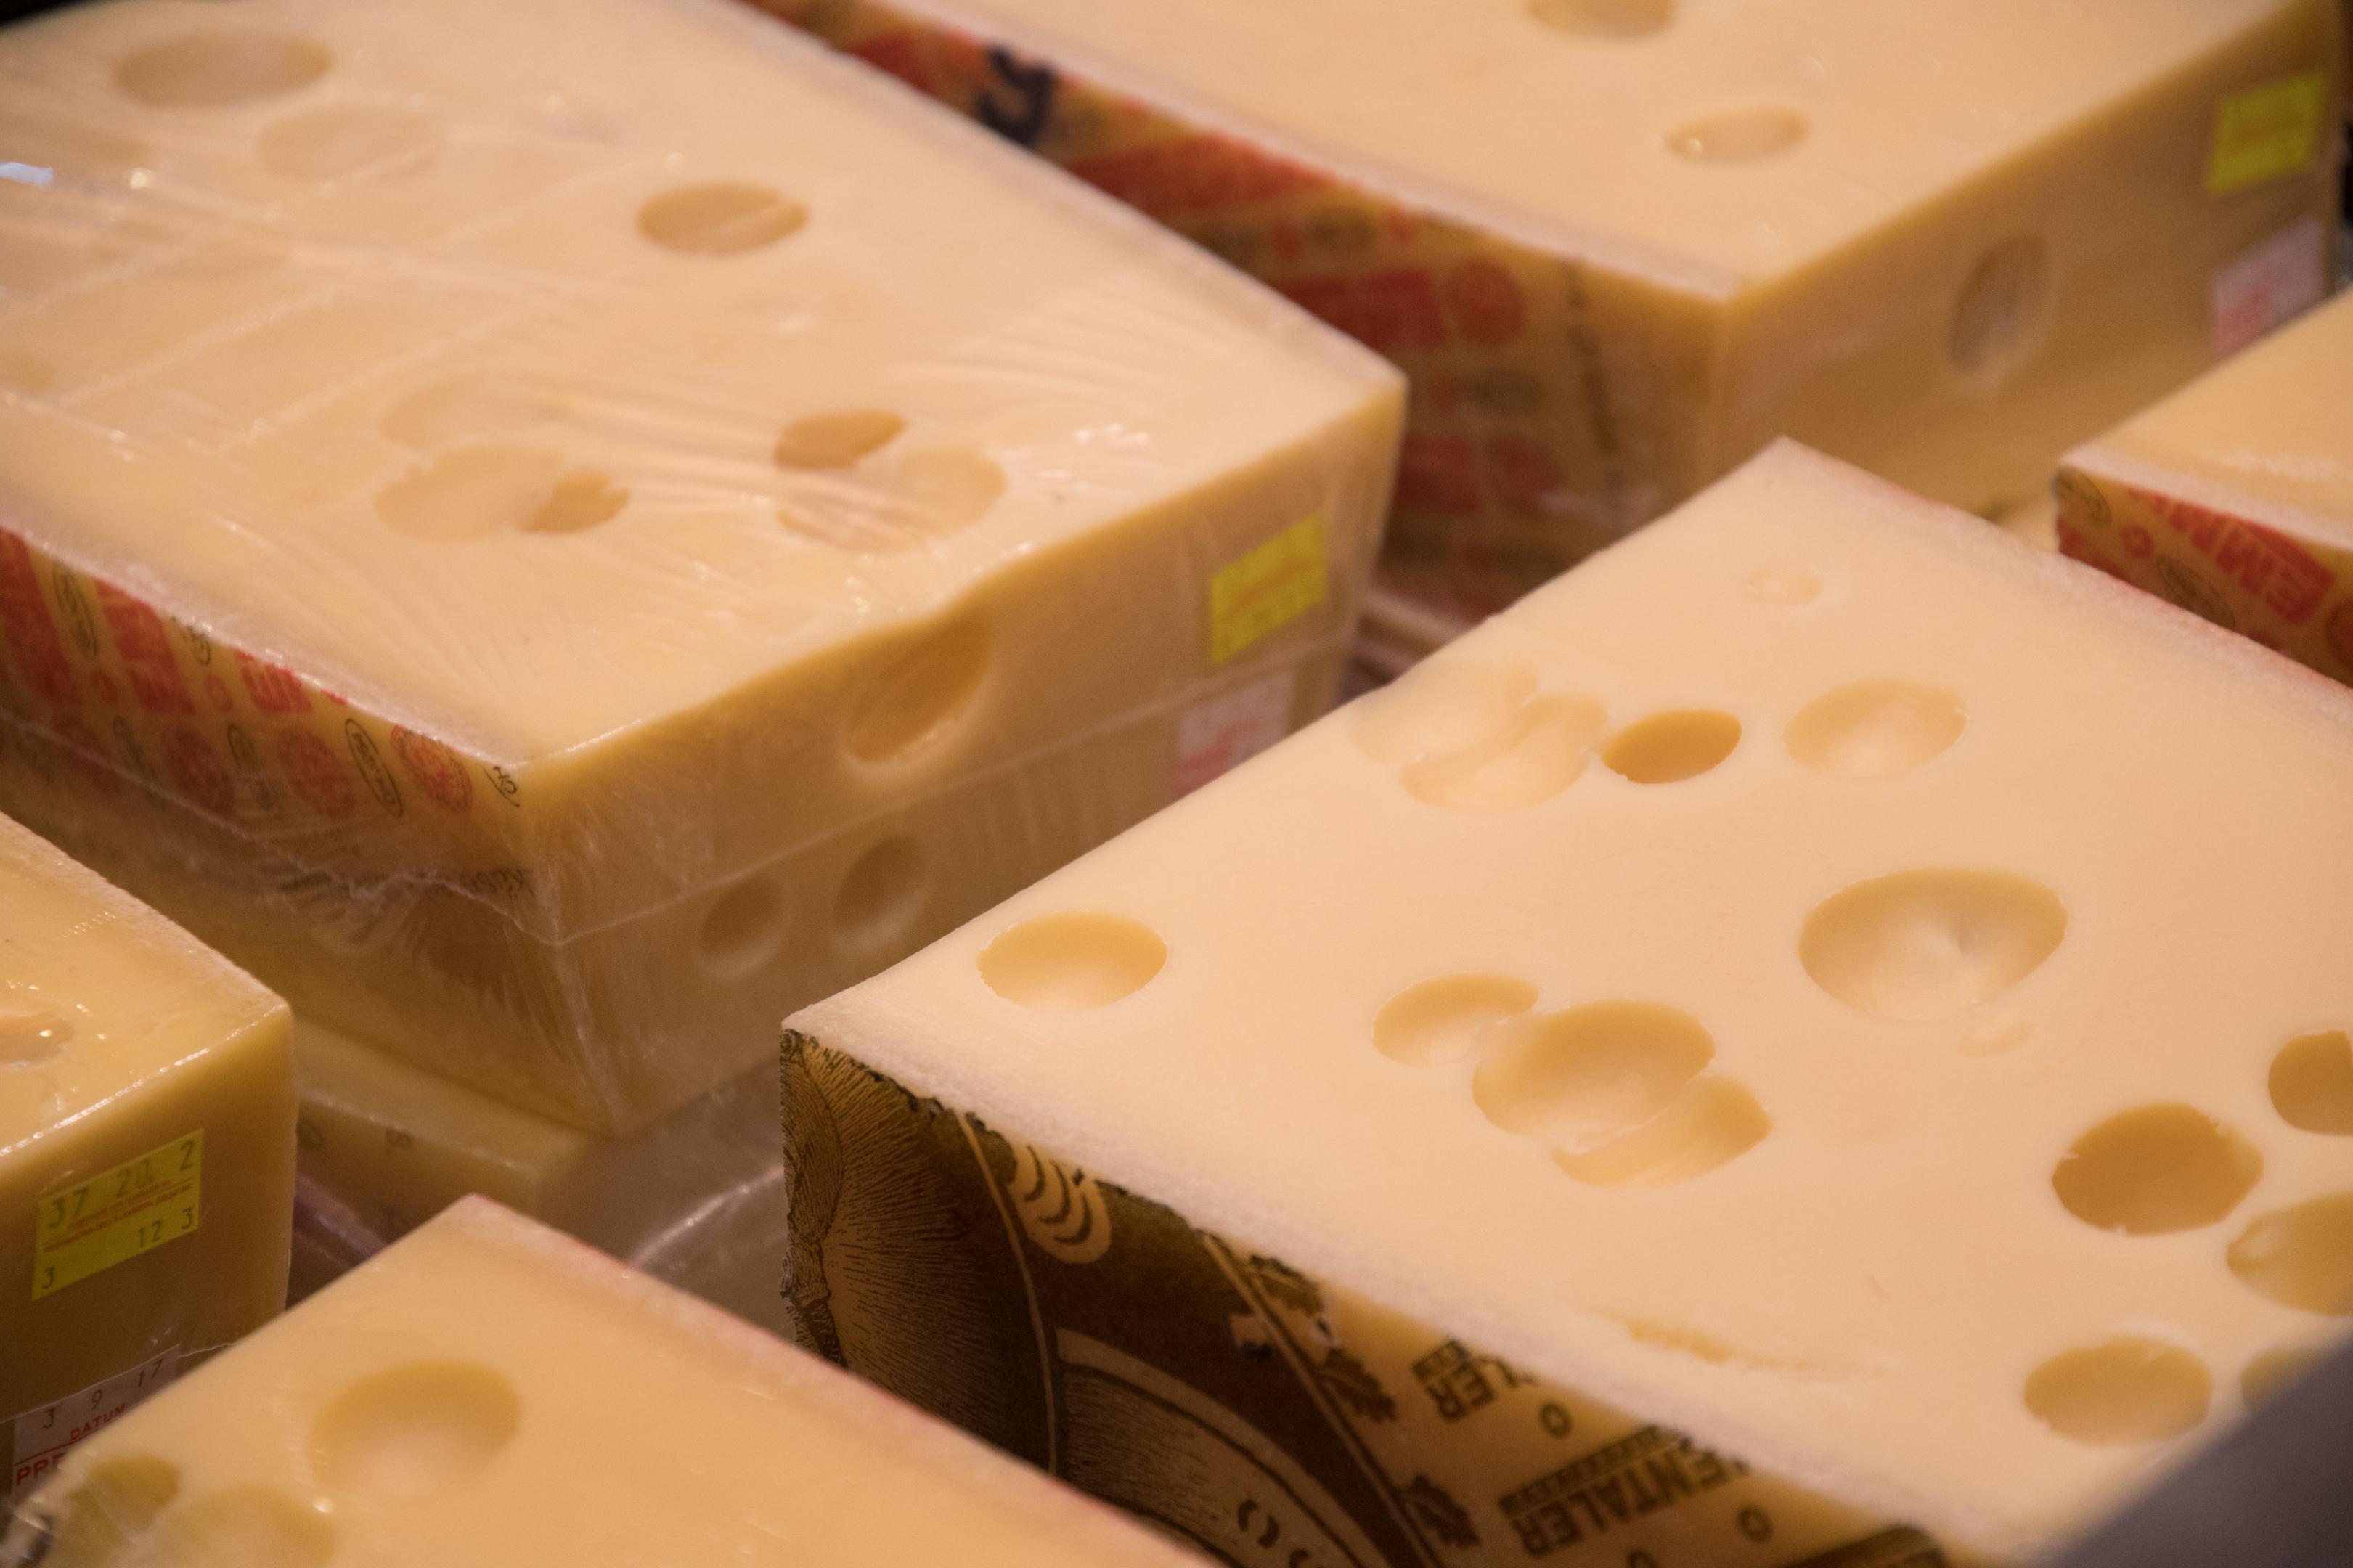 Ausser dem berühmten und traditionellen Emmentaler AOP findet man im Shop auch Non-Food-Artikel vom Käsemesser bis zur Molke-Körpermilch.